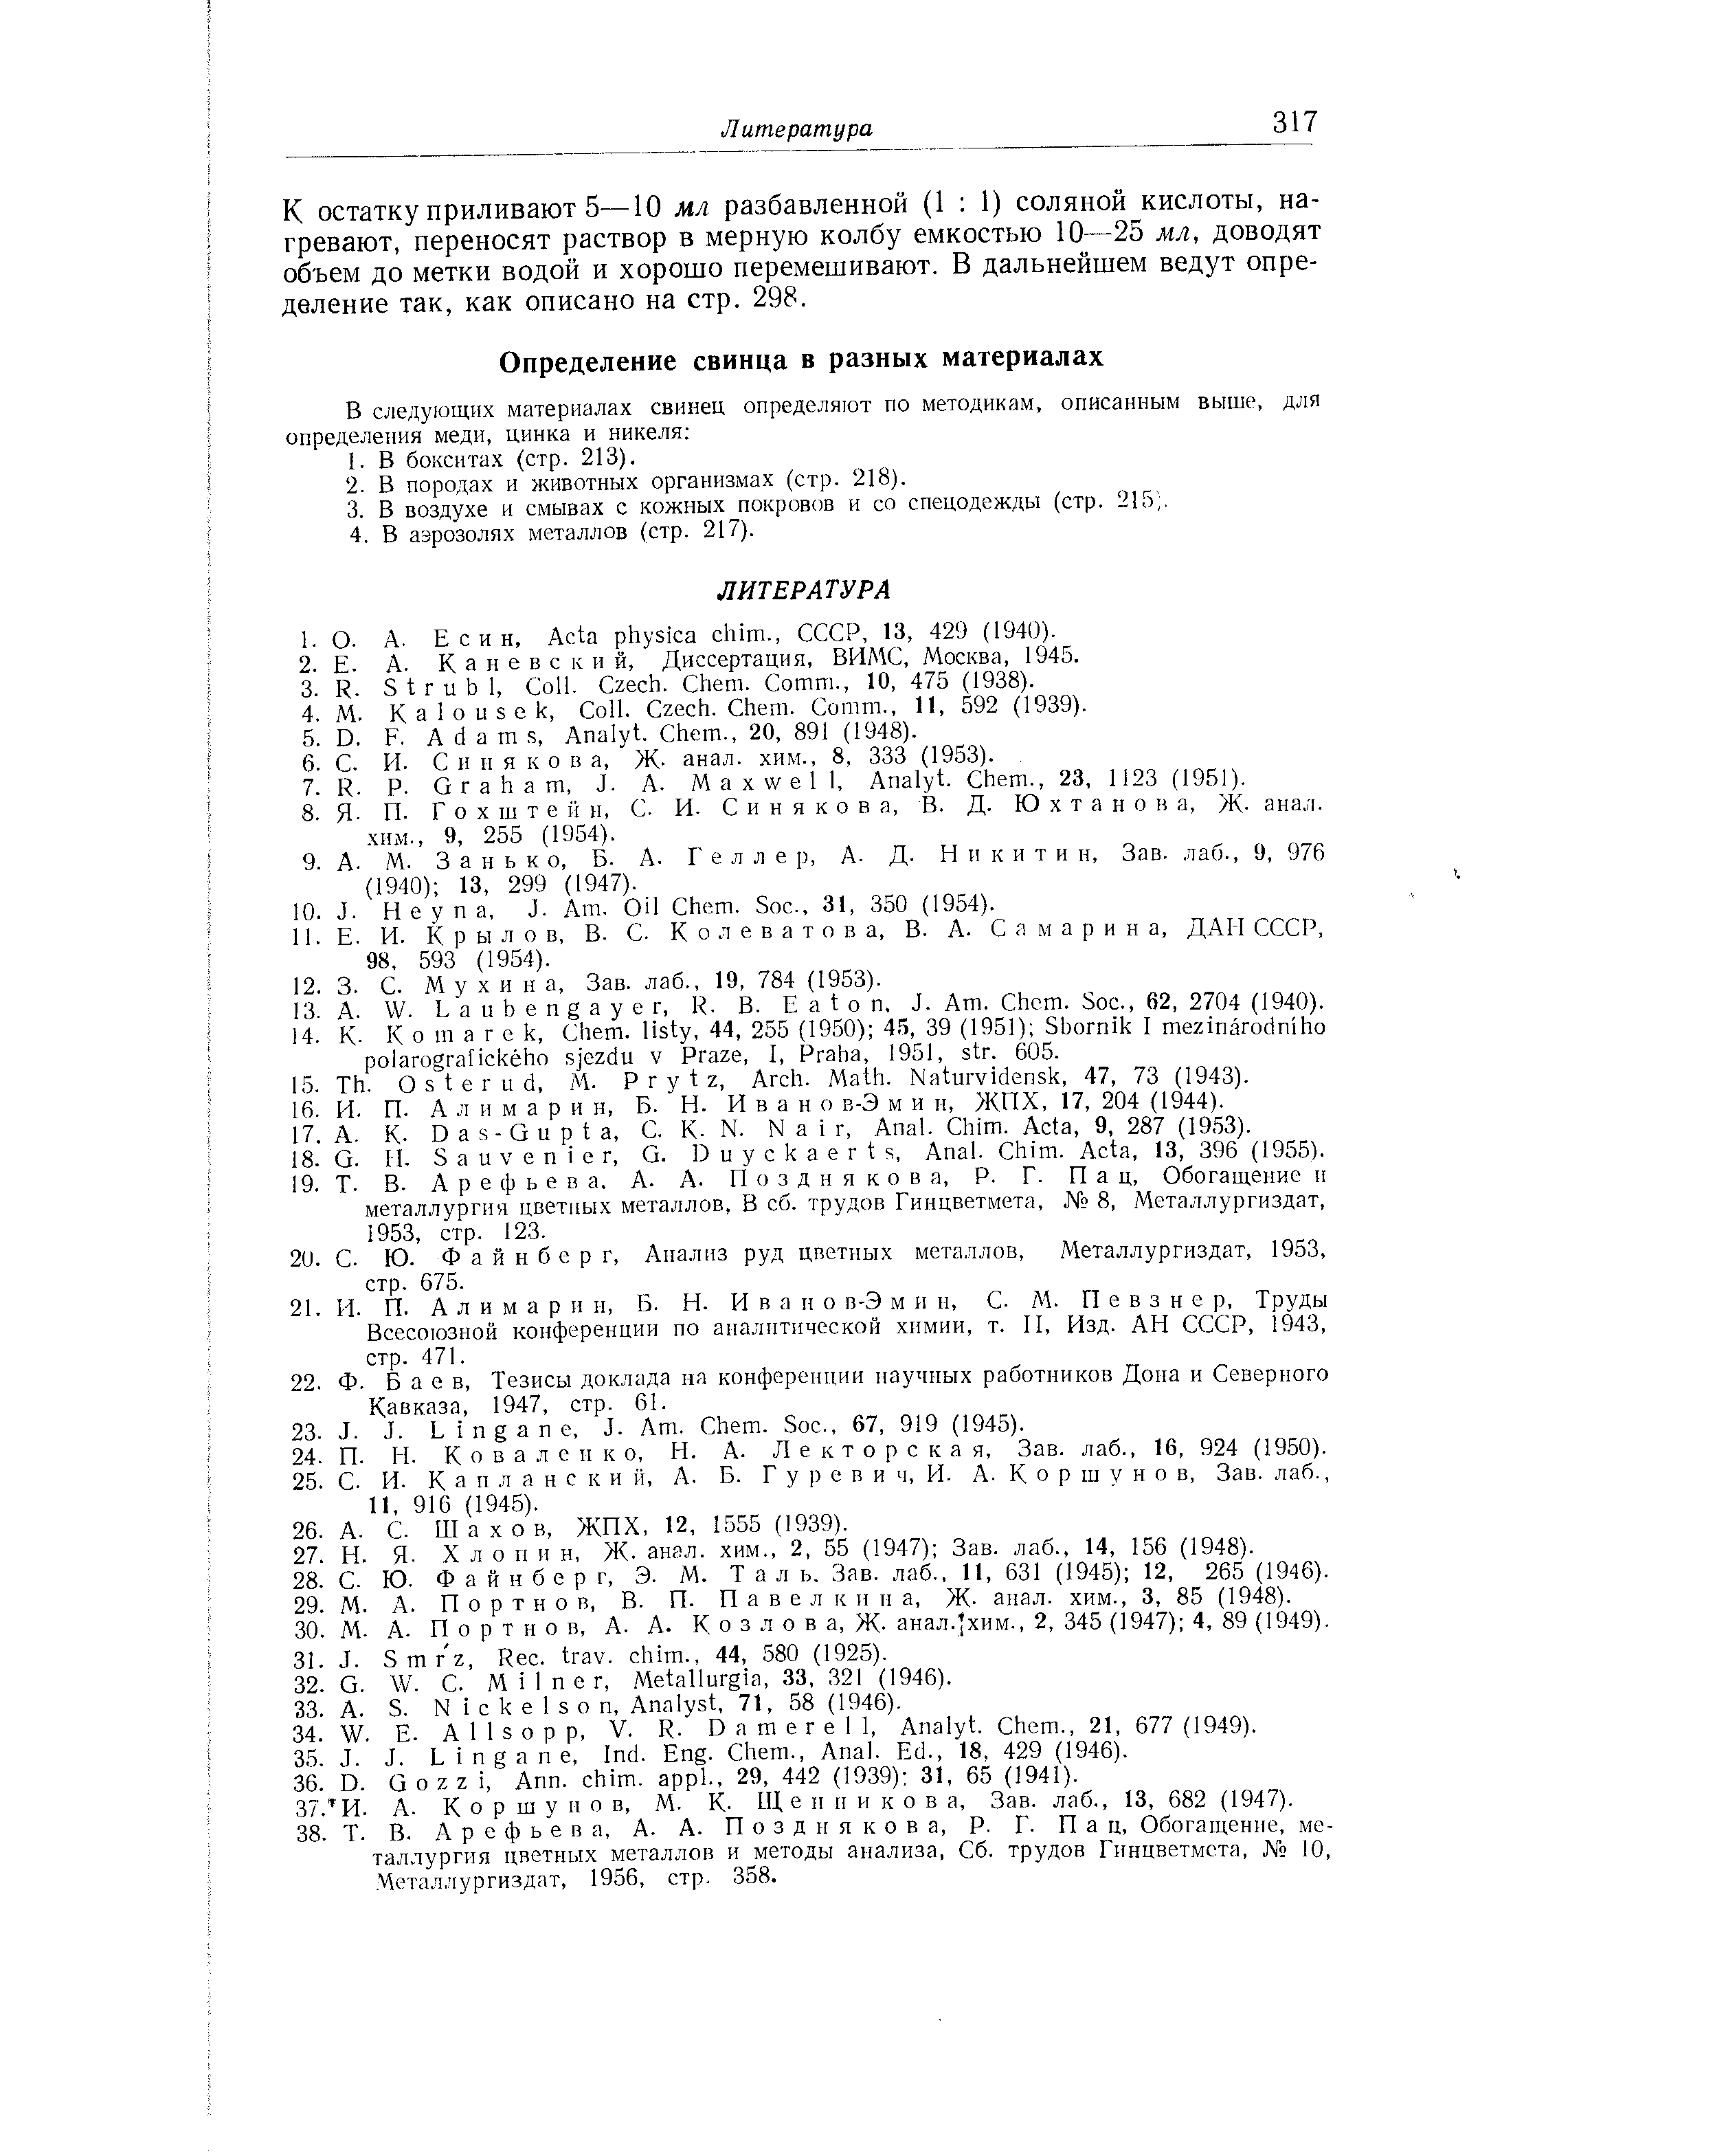 Всесоюзной конференции по аналитической химии, т. II, Изд. АН СССР, 1943, стр. 471.